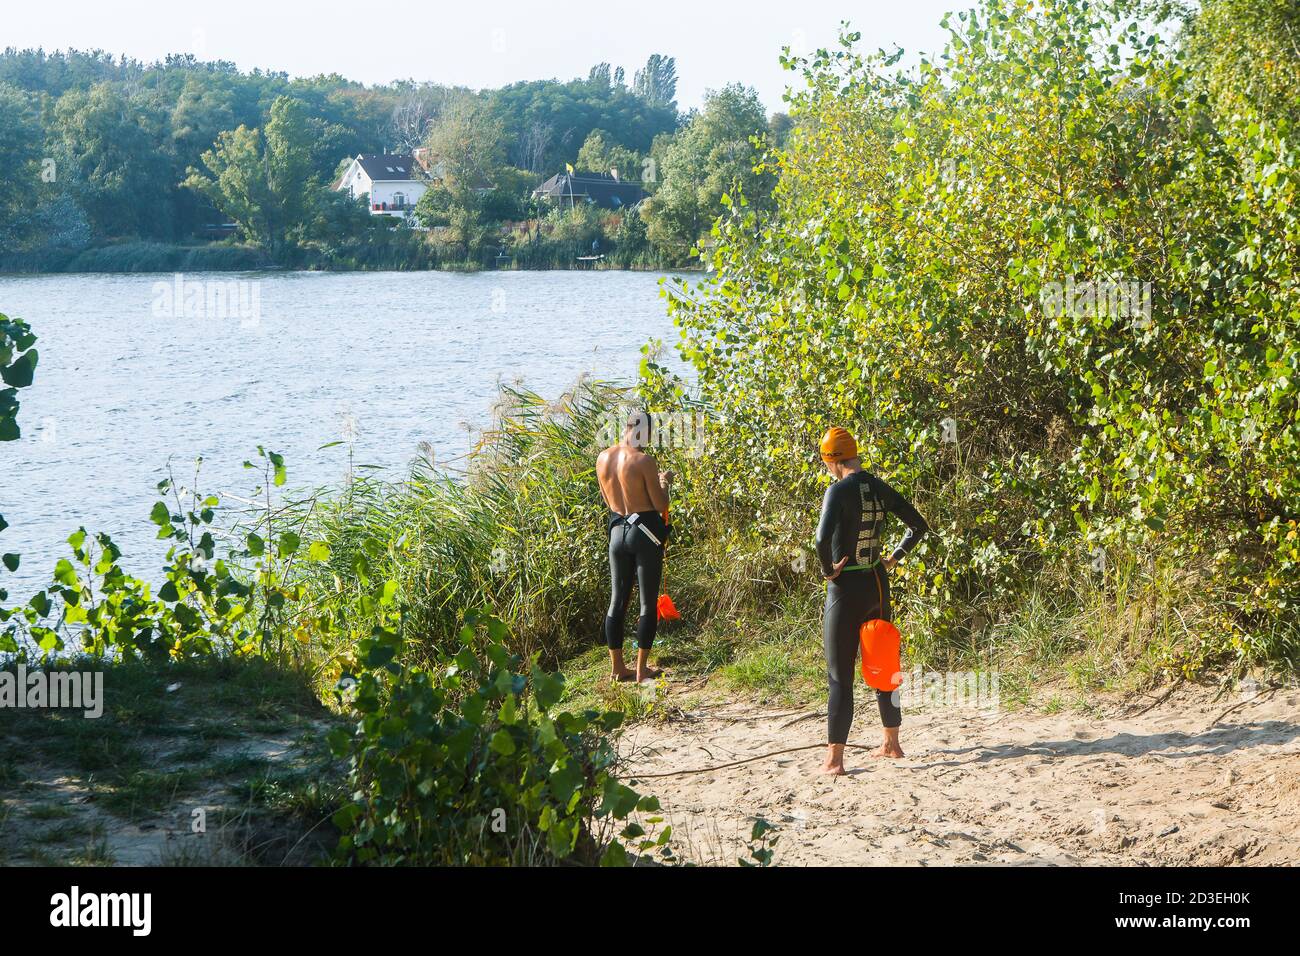 Le jeune homme en costume de plongée se prépare à plonger dans l'eau sur la rive de la région de Kiev, le lac Ministerka et la zone de loisirs, où les nageurs s'entraînent. Banque D'Images